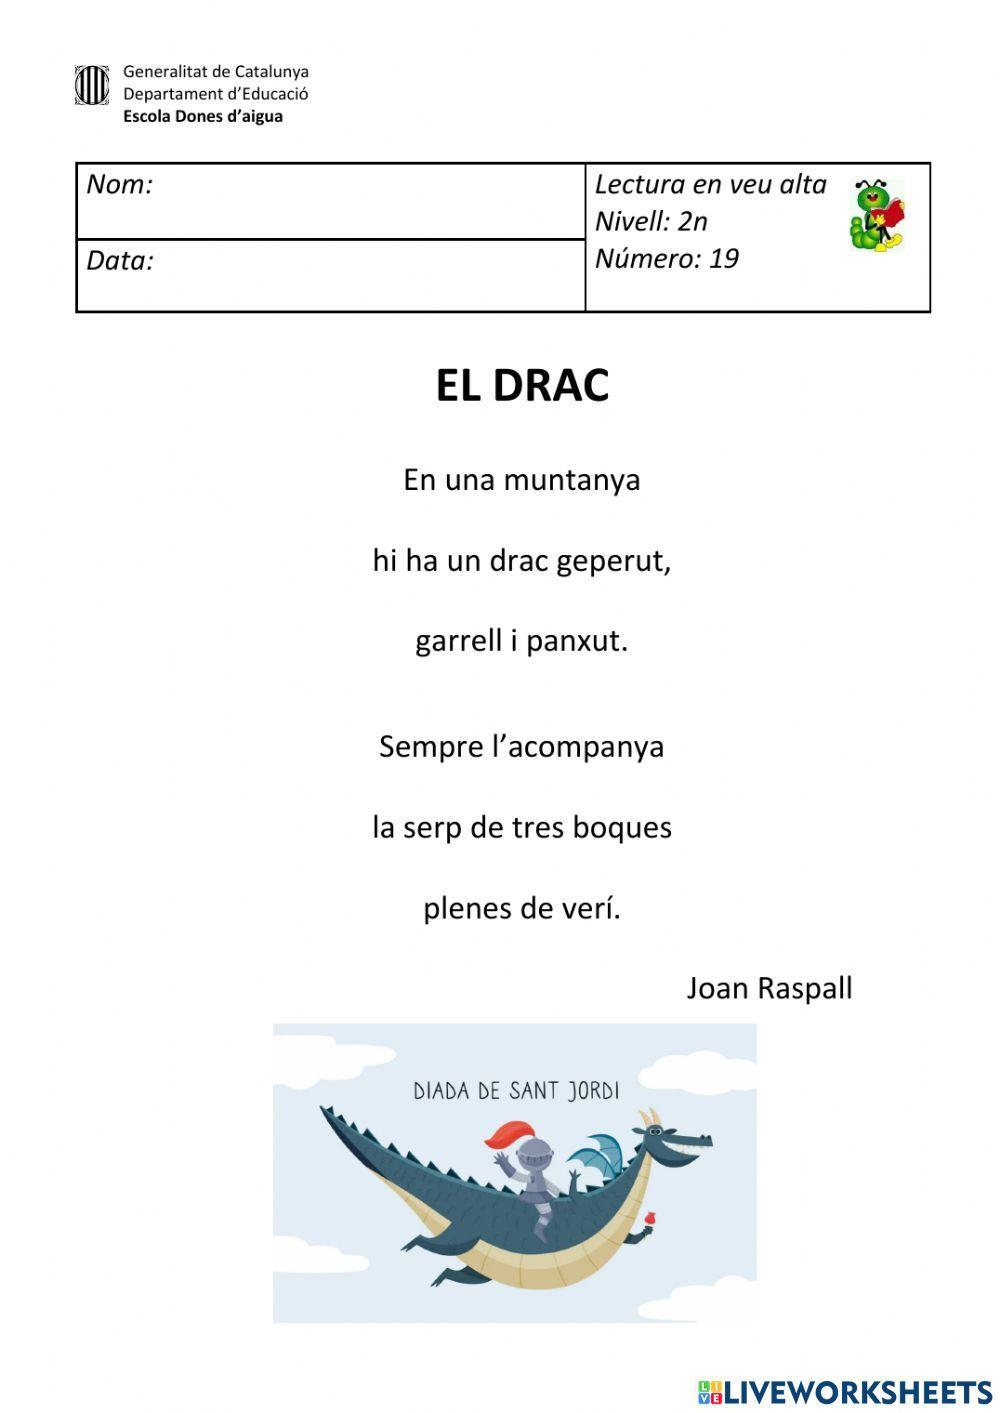 Poema del drac de Sant Jordi